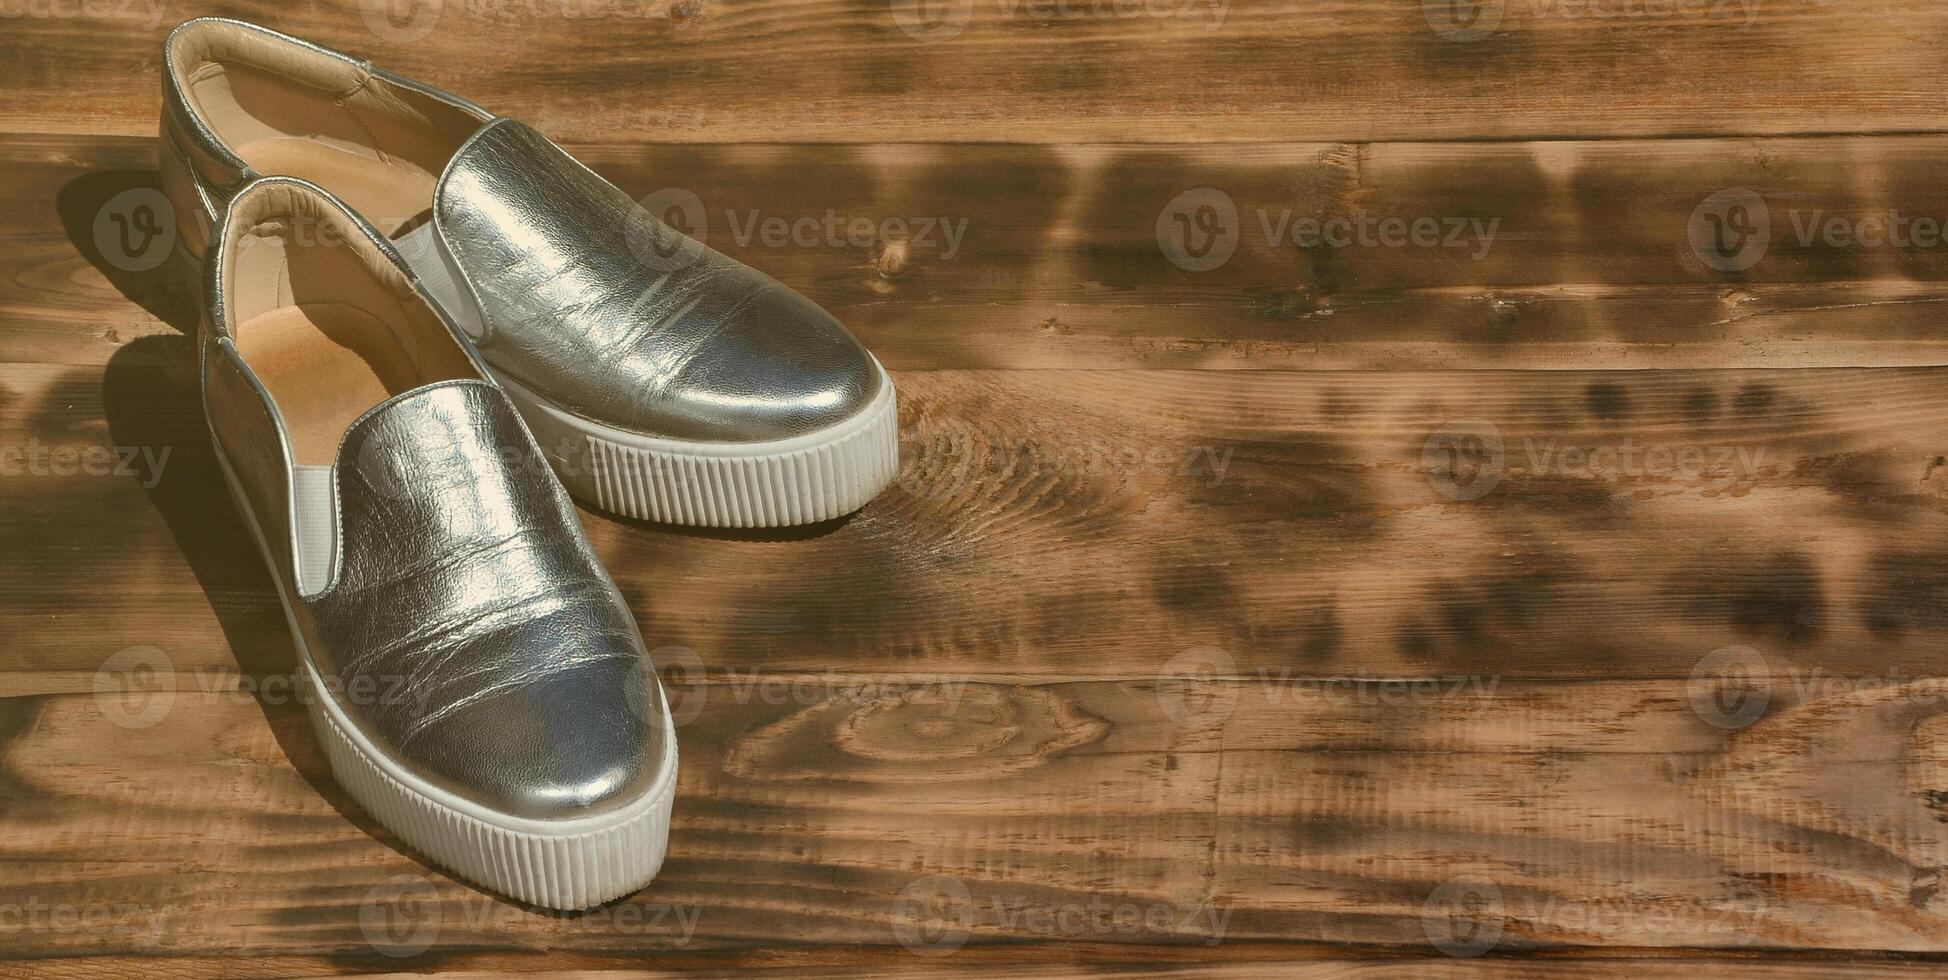 des chaussures brillantes originales de style disco reposent sur une surface en bois vintage faite de planches brunes frites. accessoire rétro de vêtements à la mode pour les discothèques et les fêtes dans le style des années quatre-vingt photo